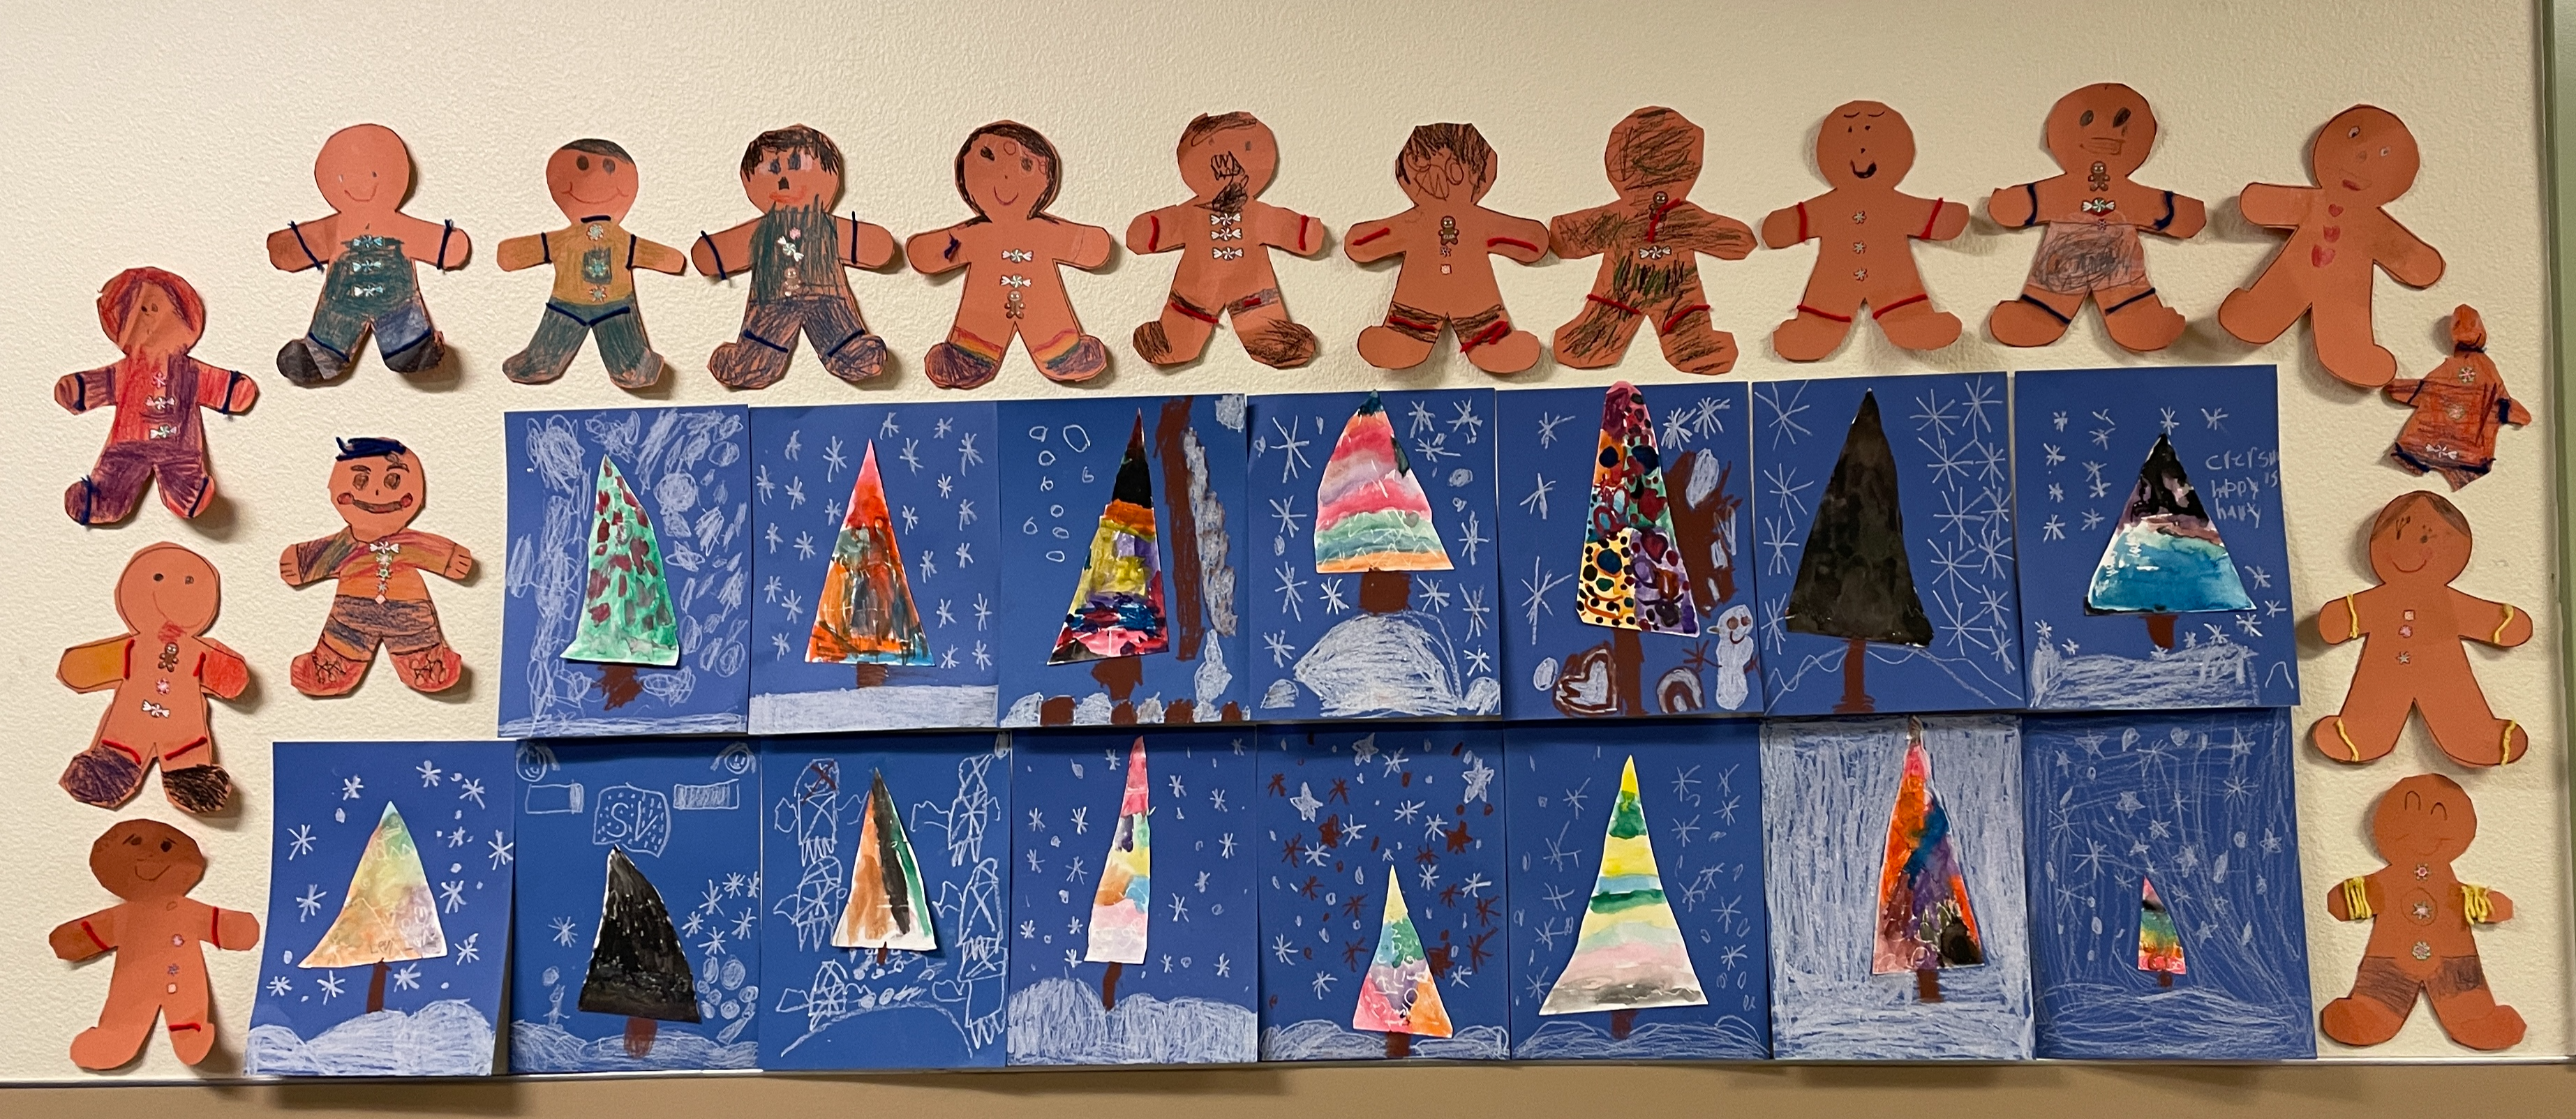 December Art in 1st grade